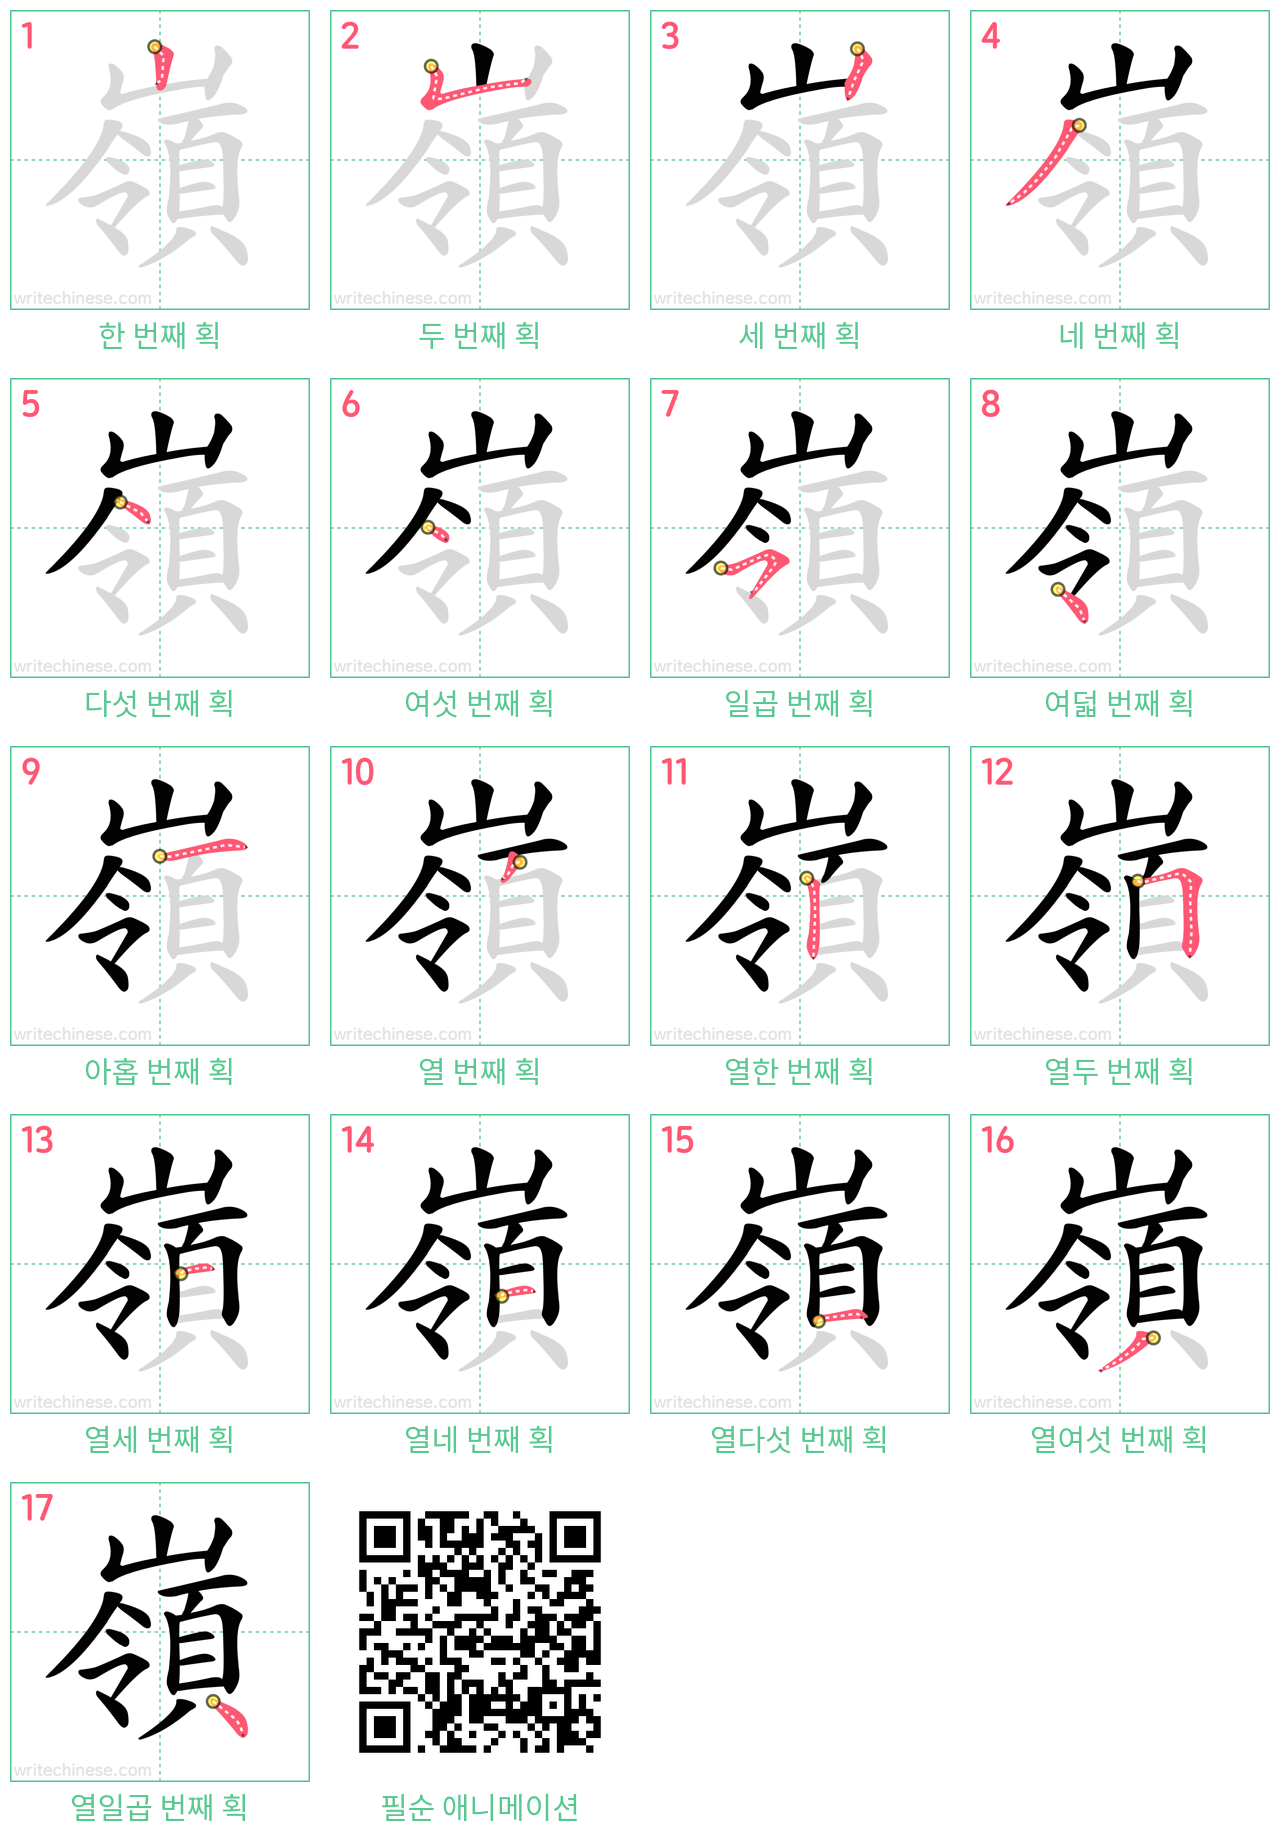 嶺 step-by-step stroke order diagrams